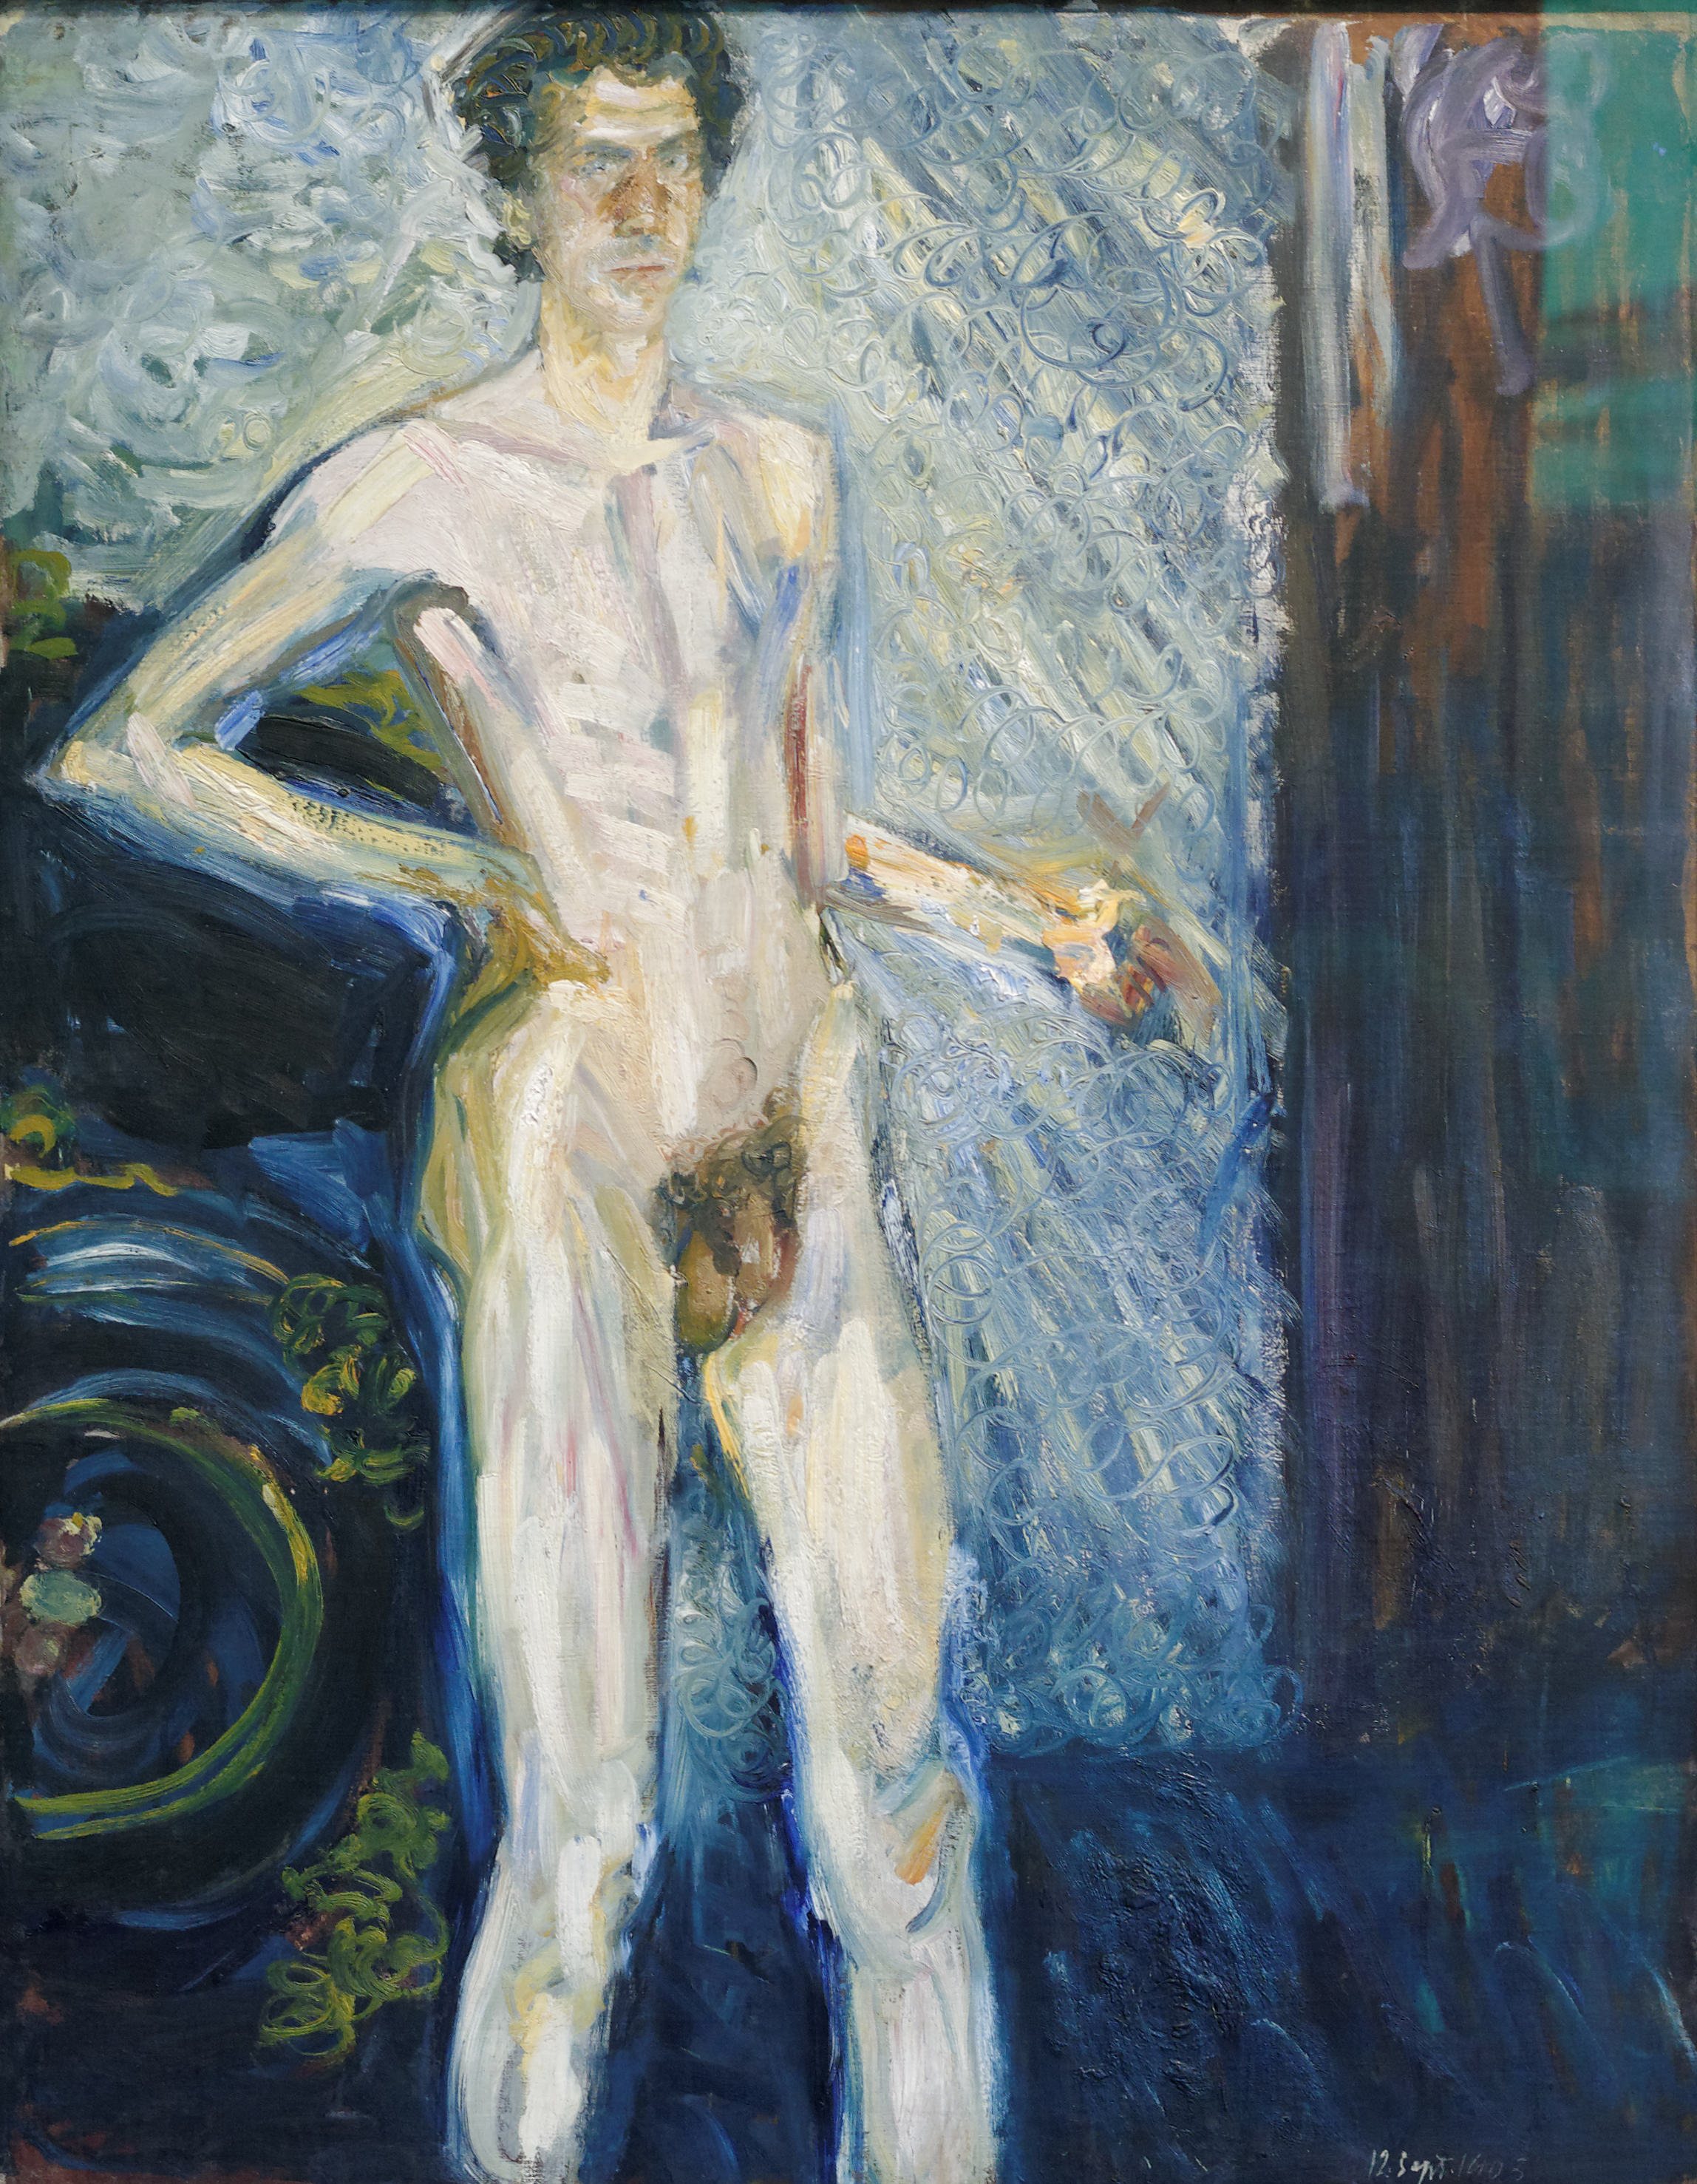 Nude self portrait by Richard Gerstl, 1908 (Wikimedia Commons)